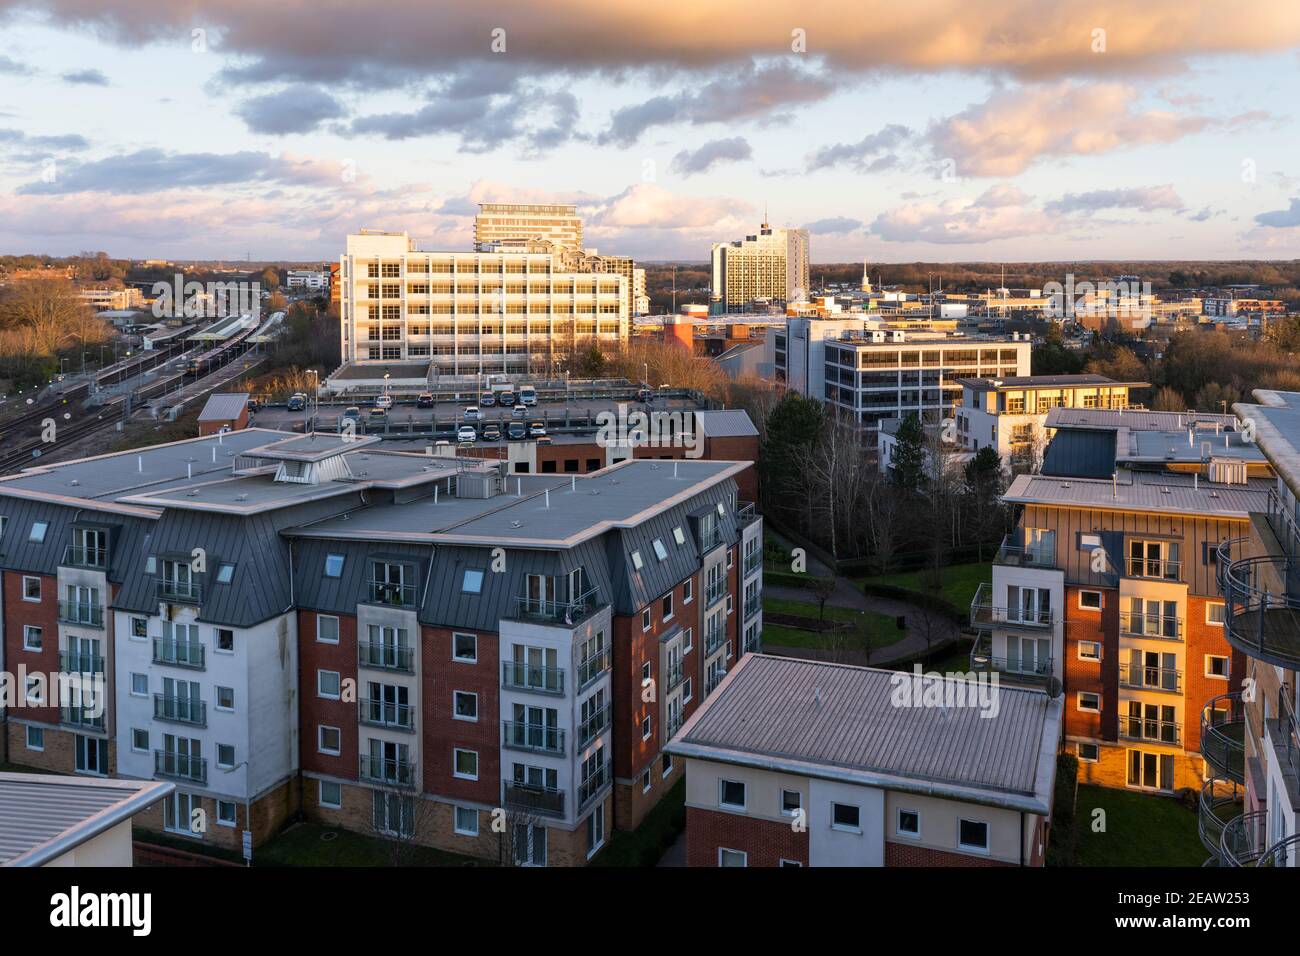 Vista aerea invernale attraverso il centro di Basingstoke, la stazione ferroviaria e gli alti appartamenti. Concetto: Locazione, costo della vita, mercato immobiliare Foto Stock